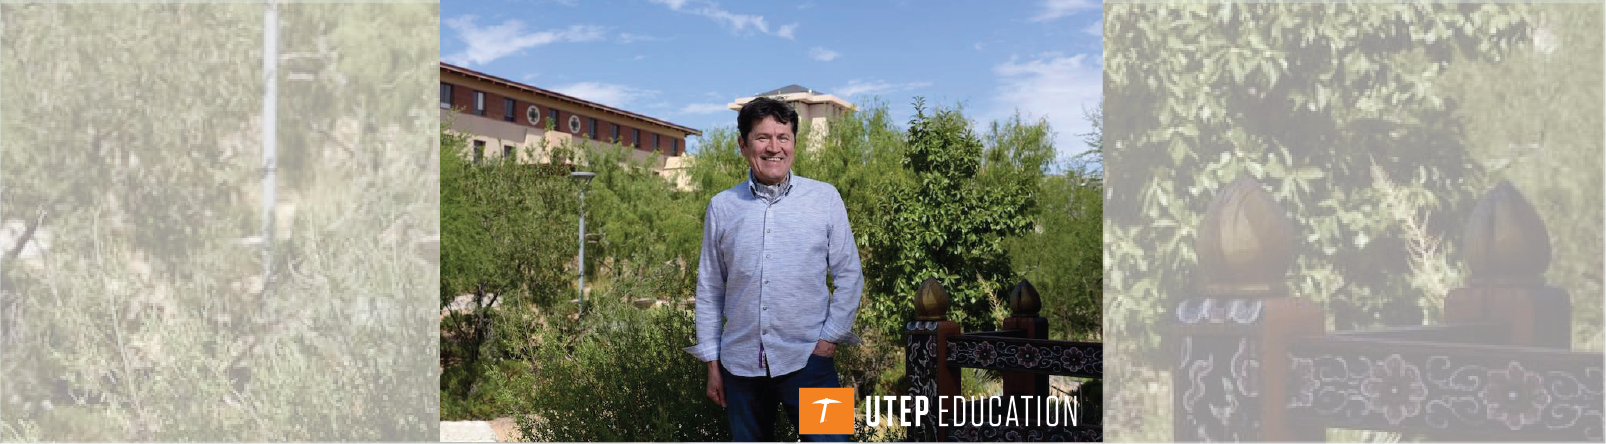 UTEP Professor Selected for Fulbright Award in Kazakhstan 